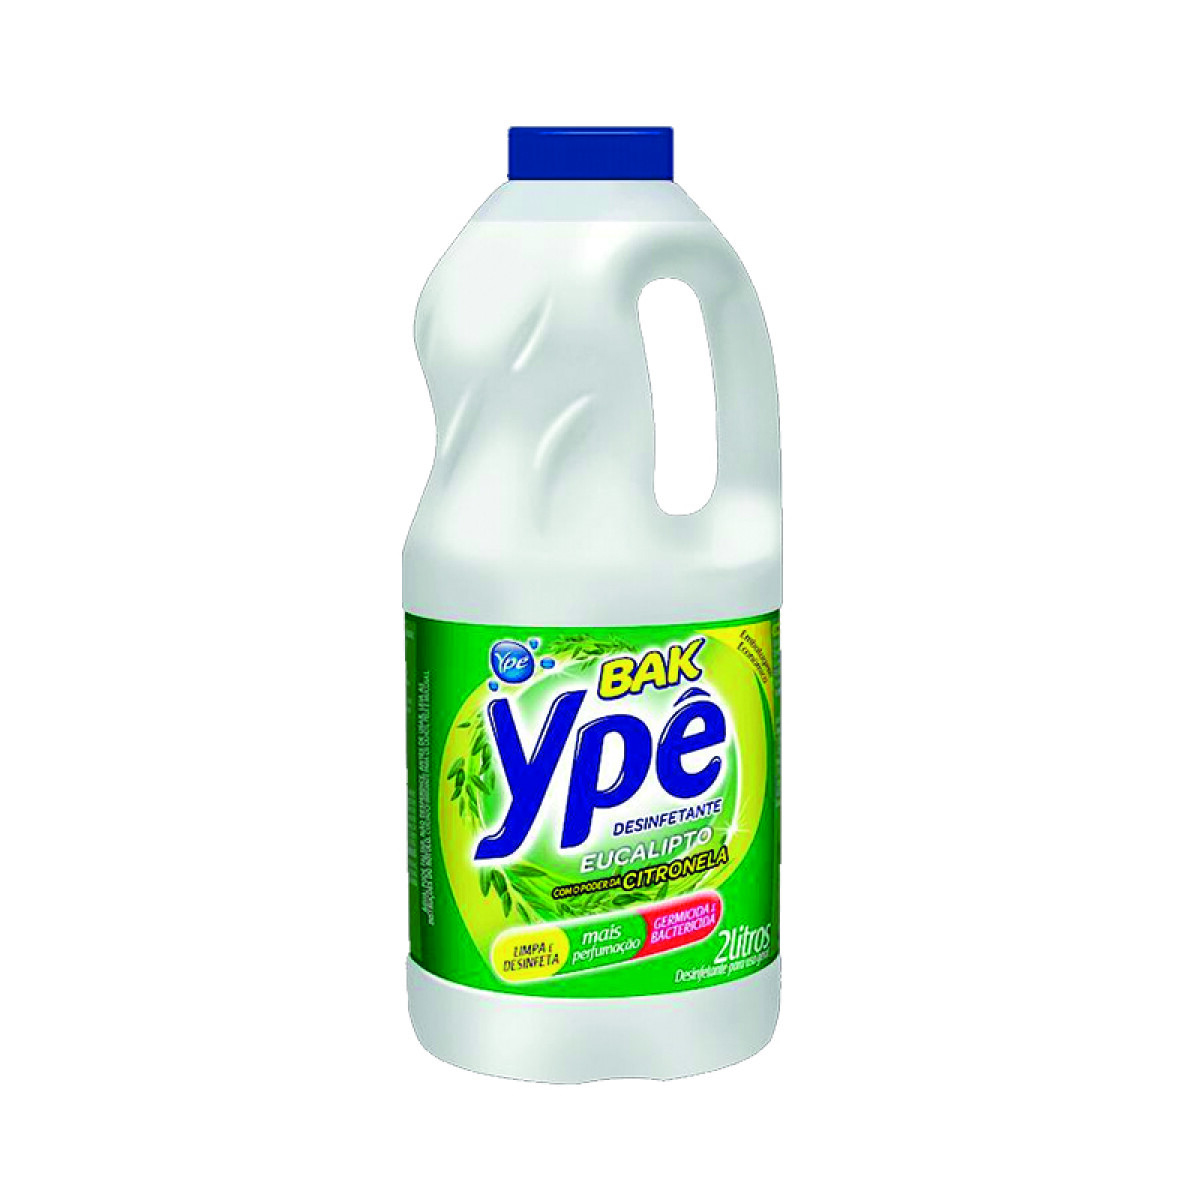 Desinfectante YPE - Eucalipto | 2 litros 